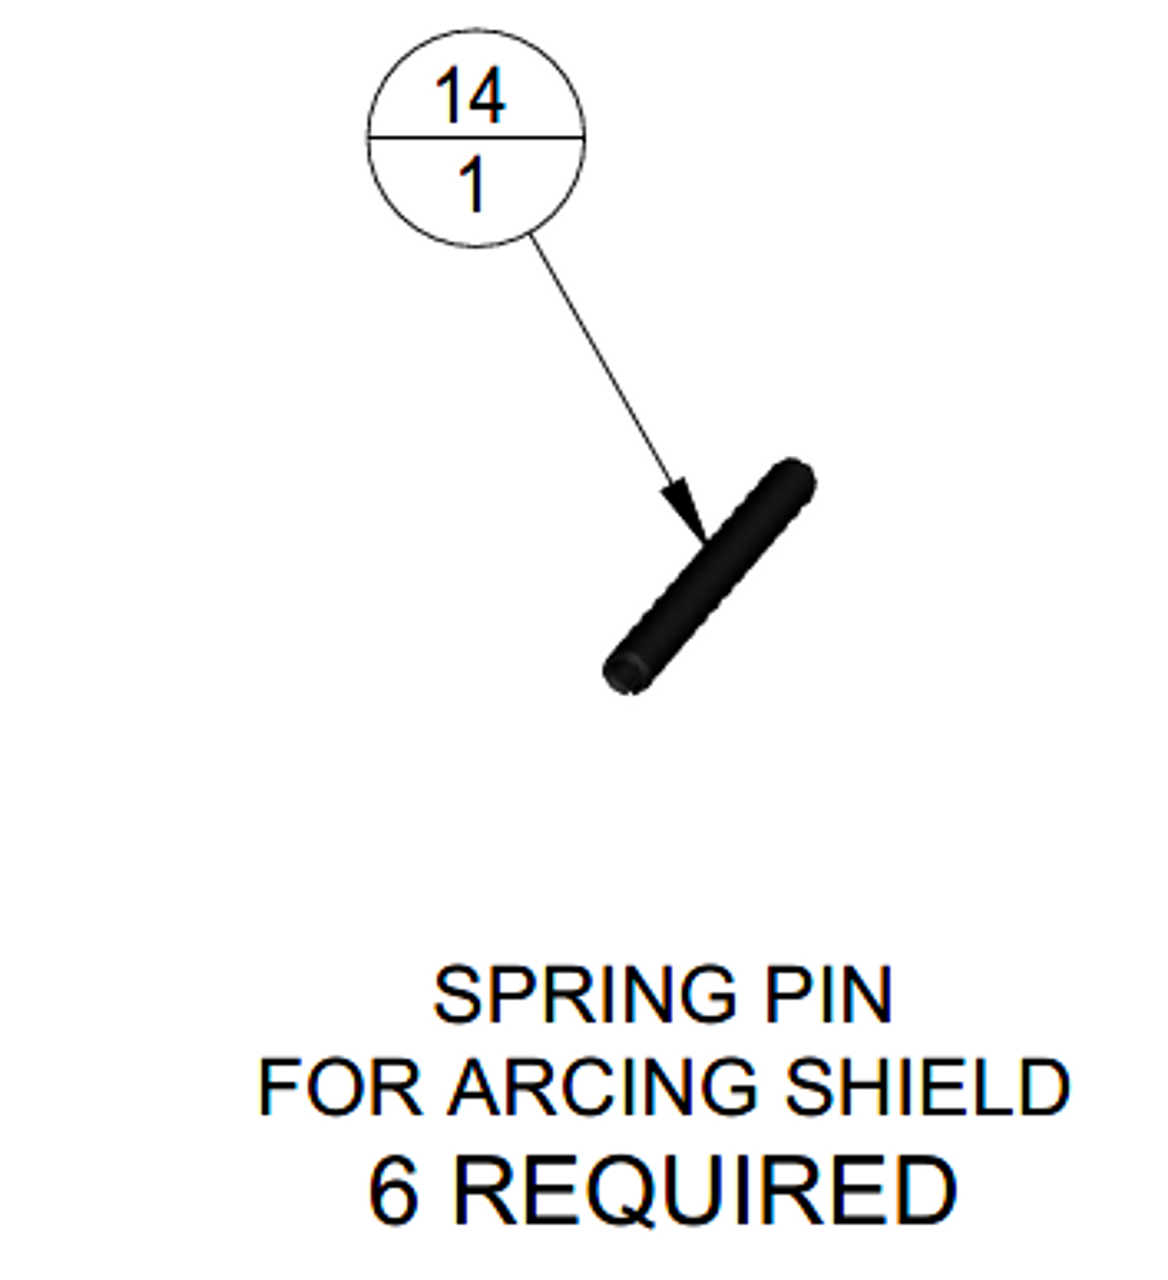 UZE spring pin